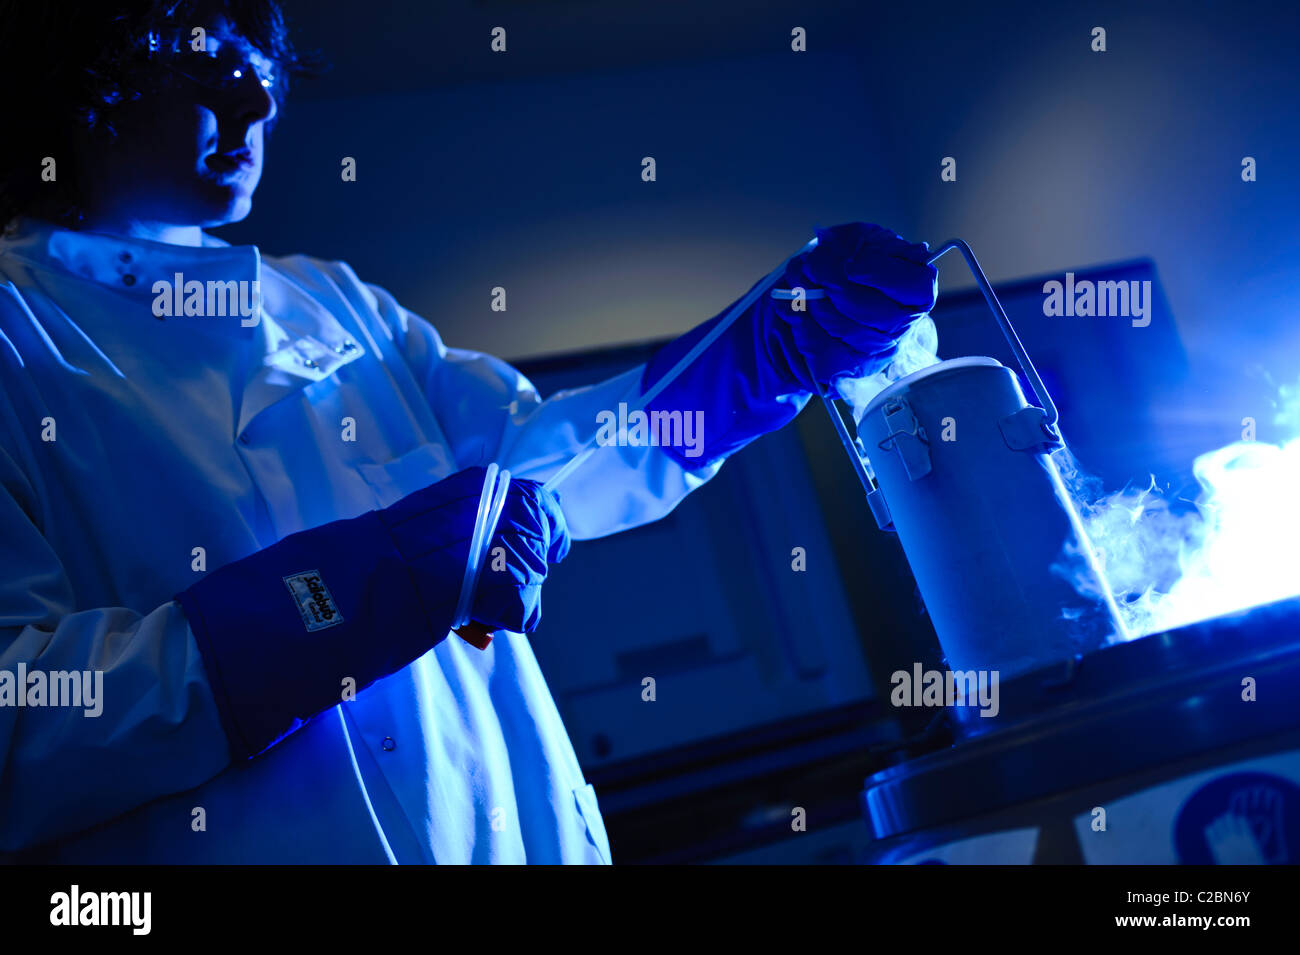 Junge männliche Wissenschaftler tragen von Schutzbrillen Laborkittel und blaue Handschuhe heben Zellkulturen von flüssigem Stickstoff dynamisch beleuchtet blau Stockfoto